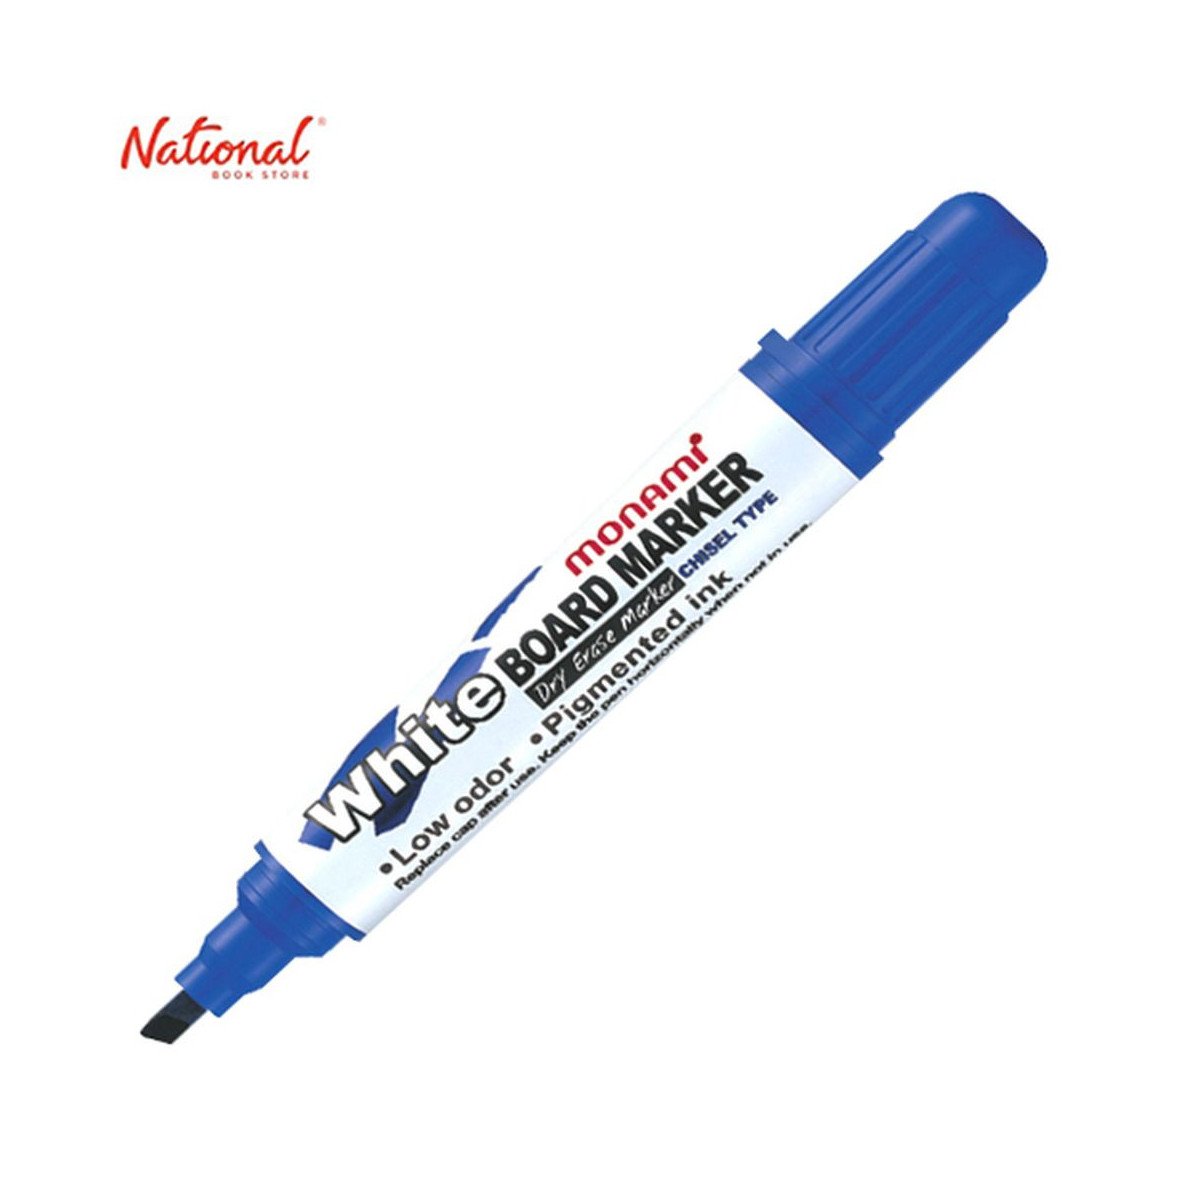 Monami Whiteboard Marker Blue Chisel